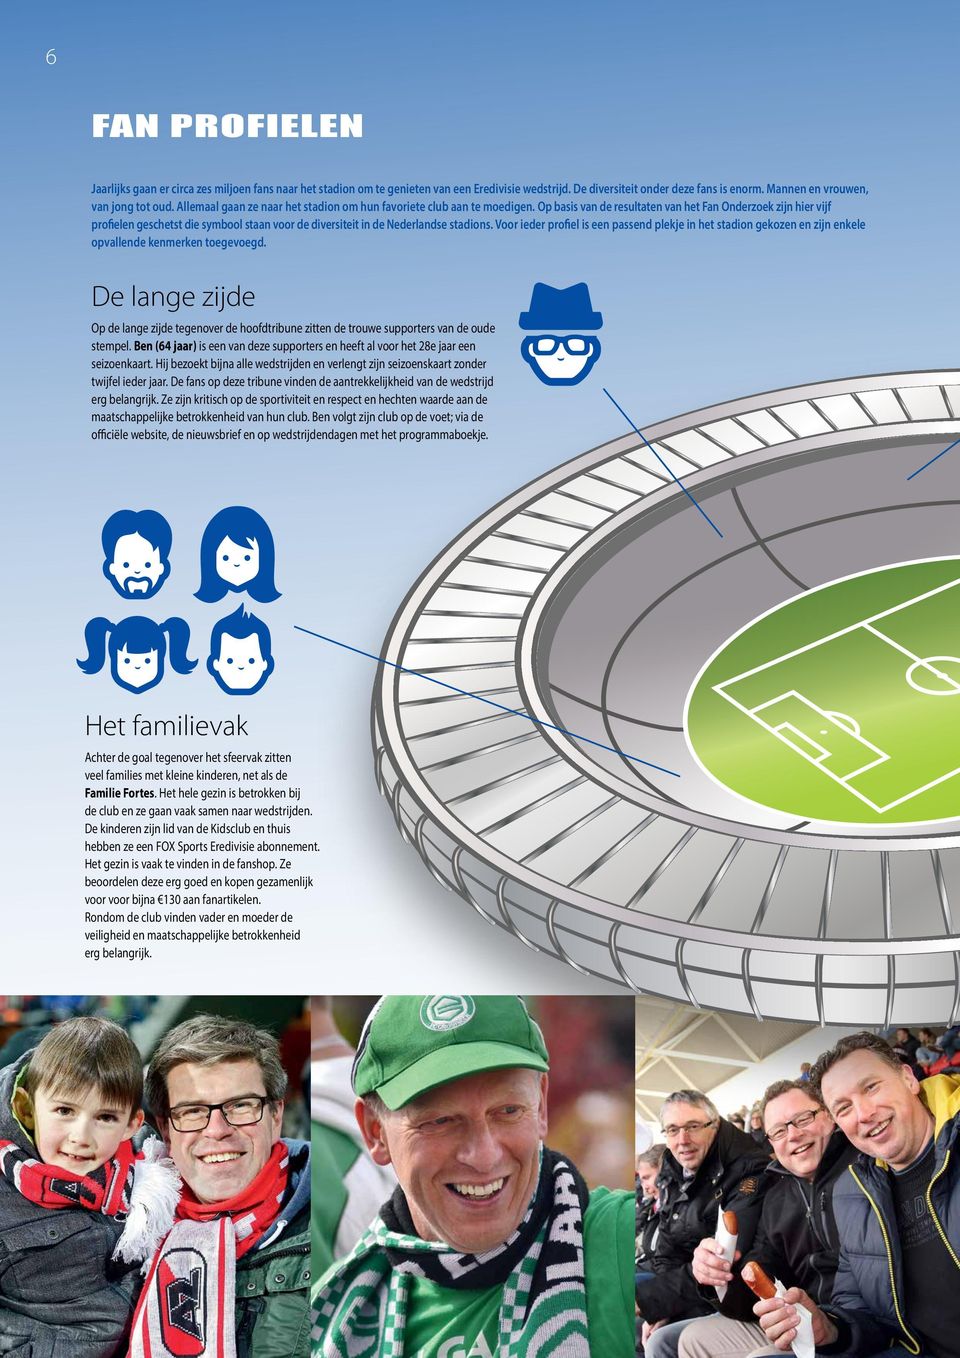 Op basis van de resultaten van het Fan Onderzoek zijn hier vijf profielen geschetst die symbool staan voor de diversiteit in de Nederlandse stadions.